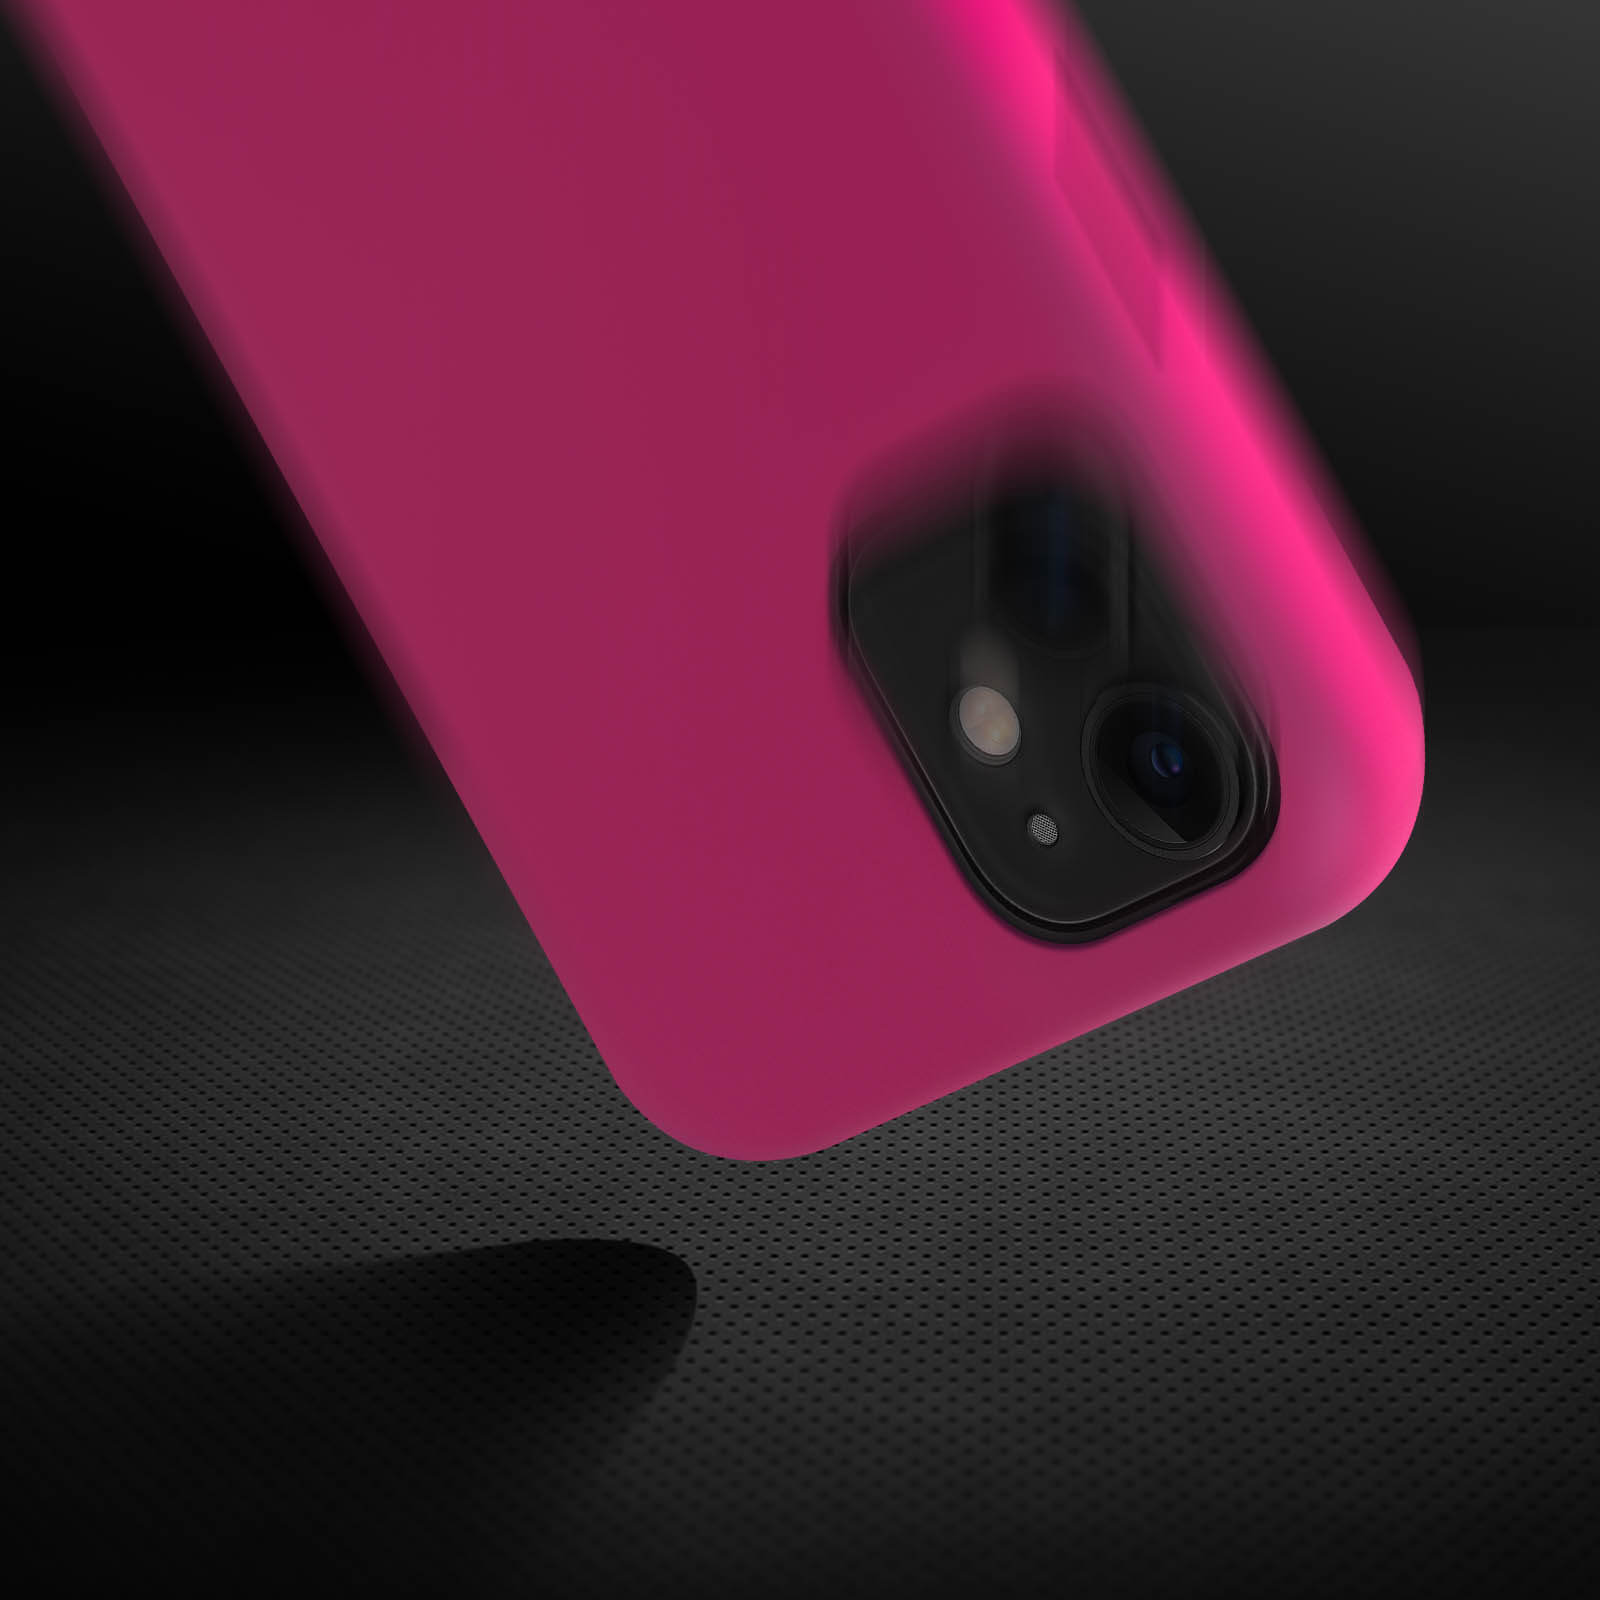 Funda Carcasa protectora de silicona semirrígida suave al tacto - Amarillo  para iPhone 15 Pro Max - Spain